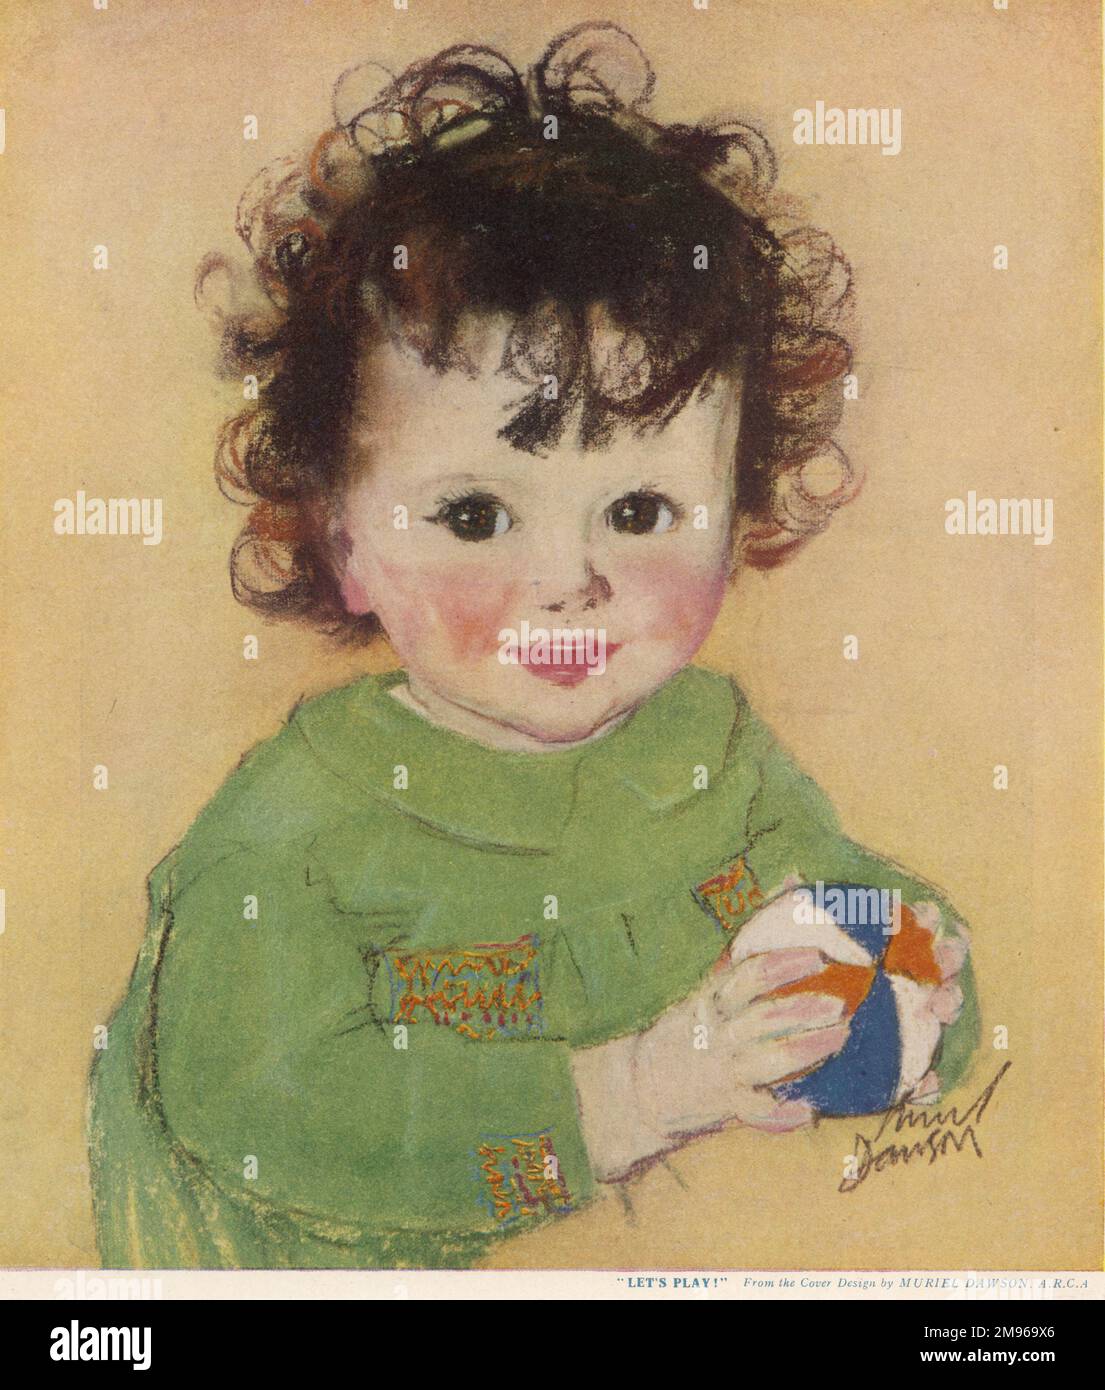 Ein fröhlich aussehendes Kind mit braunen Locken und glänzenden braunen Augen mit einem bunten Ball. Stockfoto